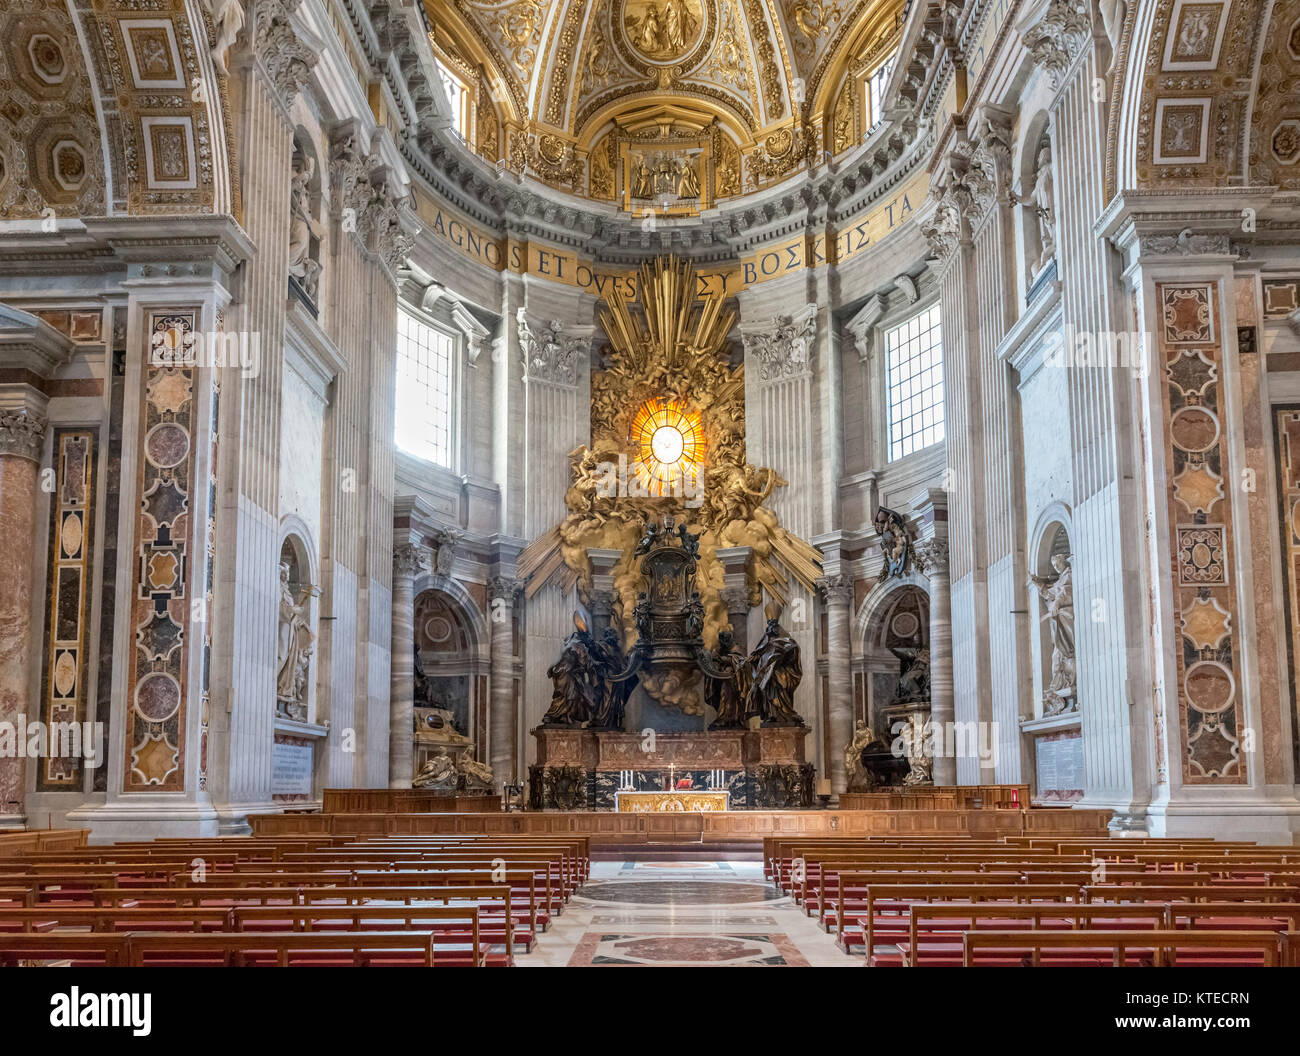 Le choeur et l'autel dans la Basilique Saint-Pierre, Vatican, Rome, Italie Banque D'Images